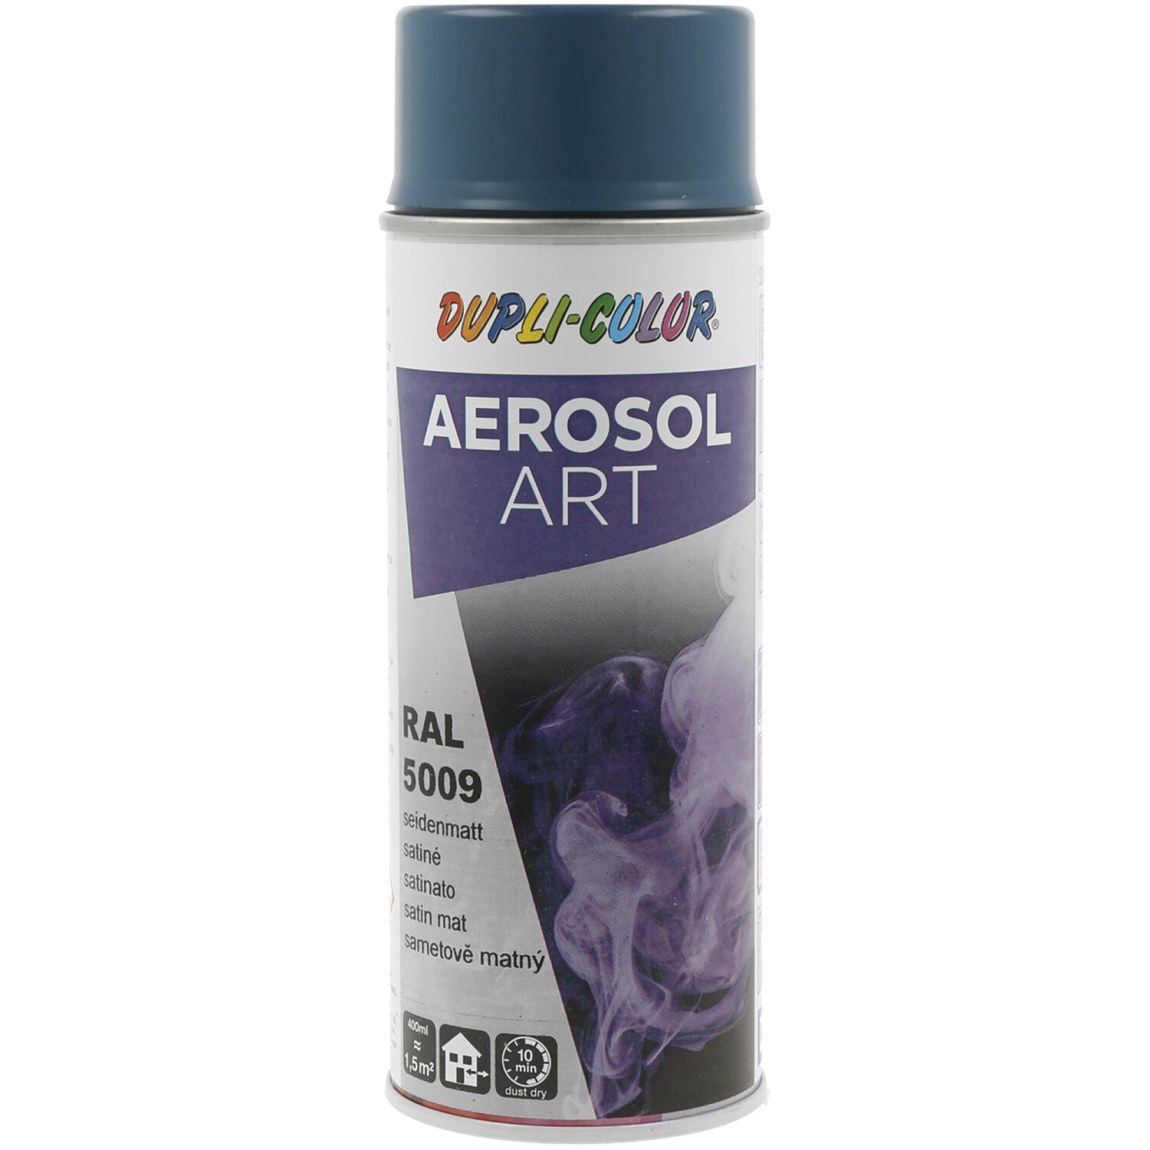 Dupli-Color Aerosol Art sprej 400 ml azurová modrá hedv.mat / RAL 5009 - Železářství Chemicko-technické výrobky Technické aerosoly Lak ve Spreji